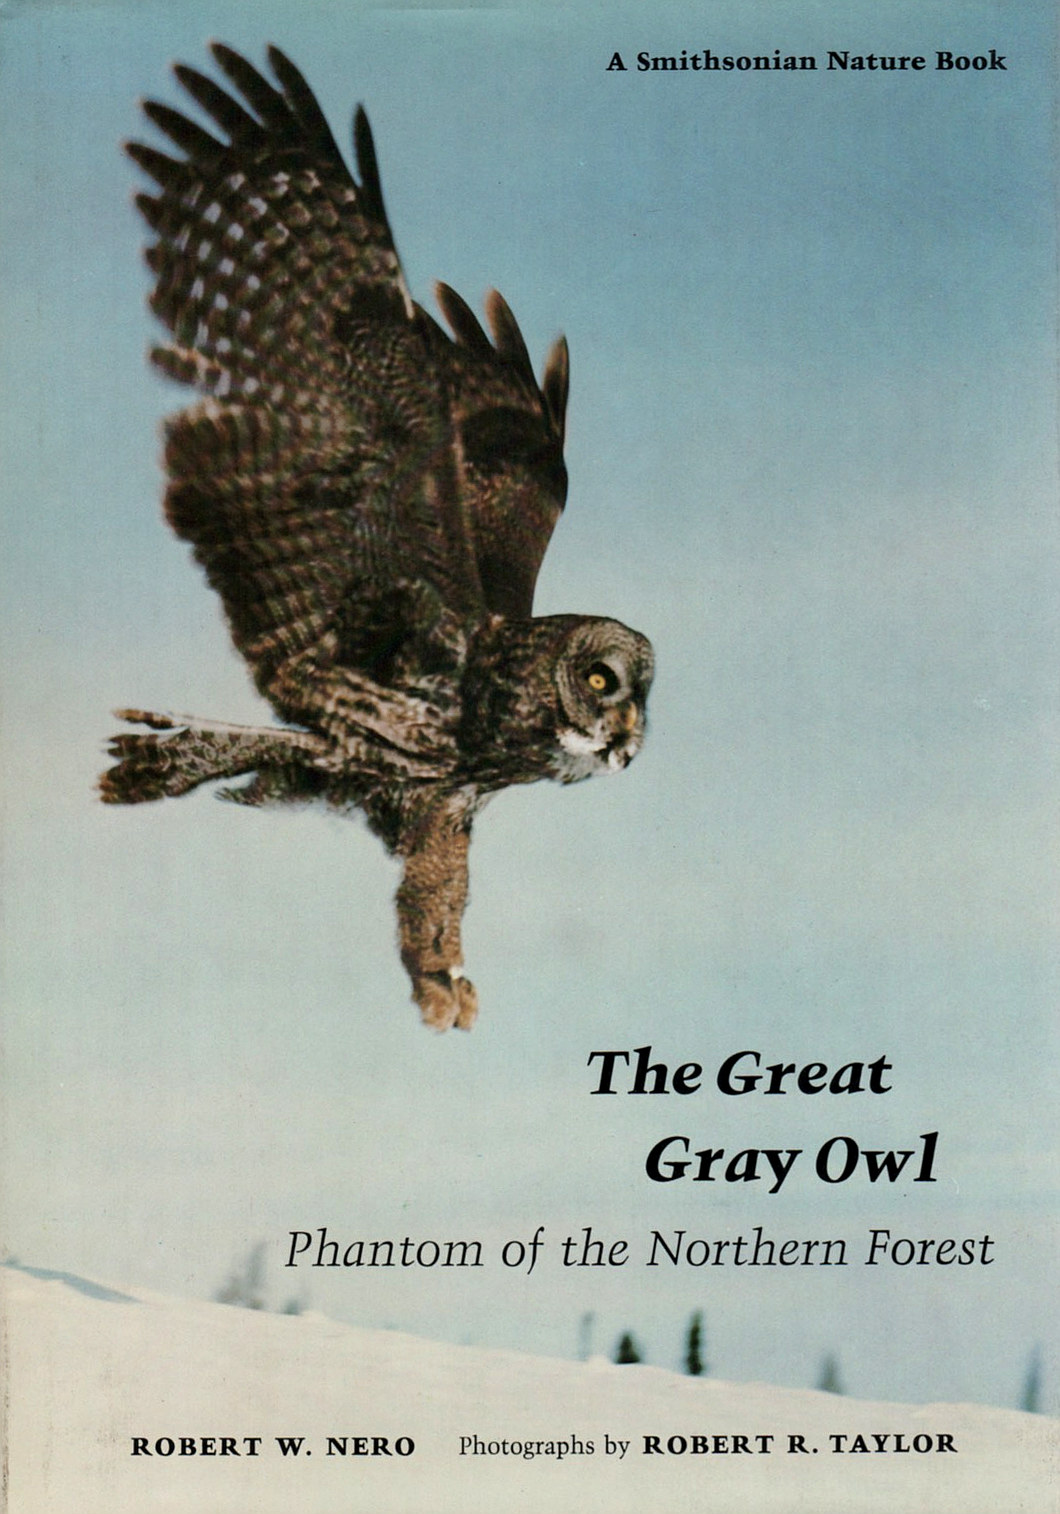 The Great Gray Owl (Robert Nero)